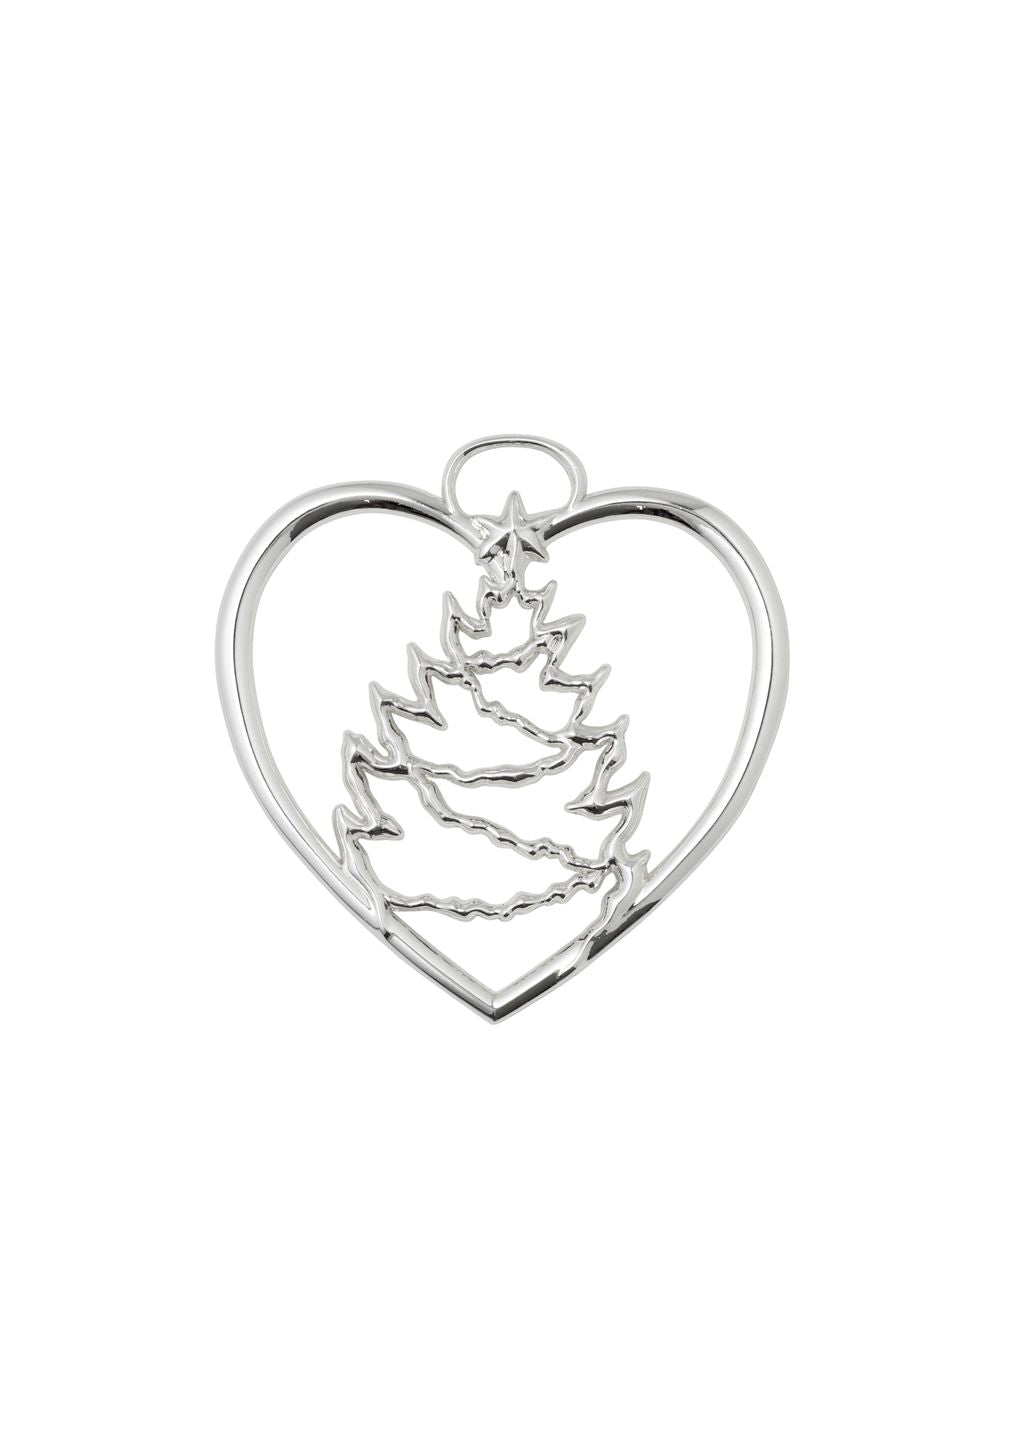 Rosendahl Karen Blixen Heart Tree Christmas H7,5 cm, argento placcato